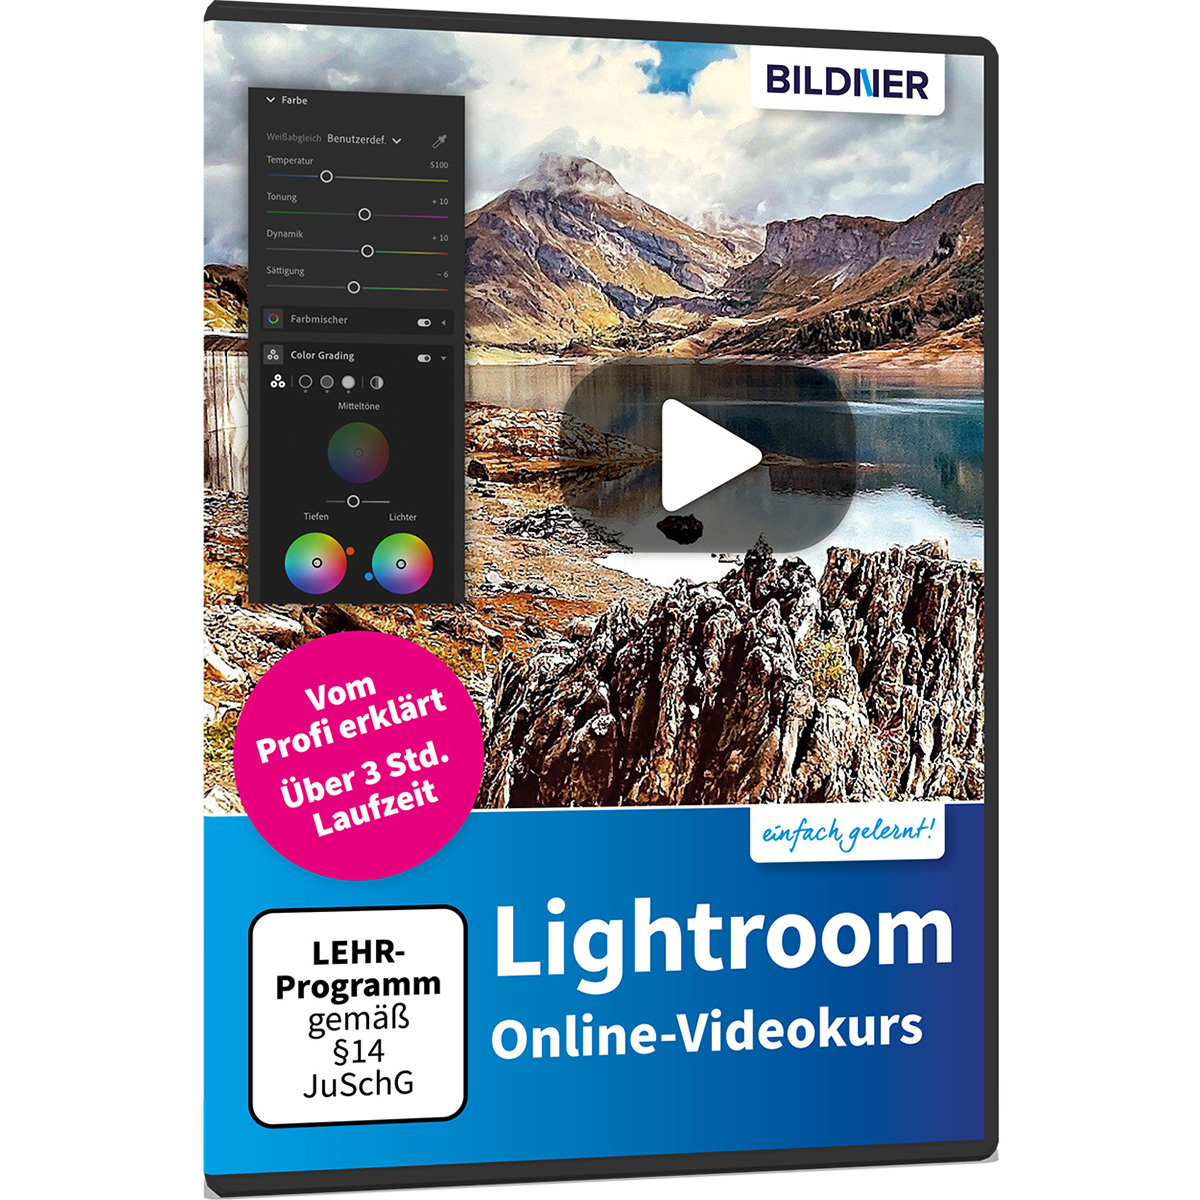 Online-Videokurs Lightroom